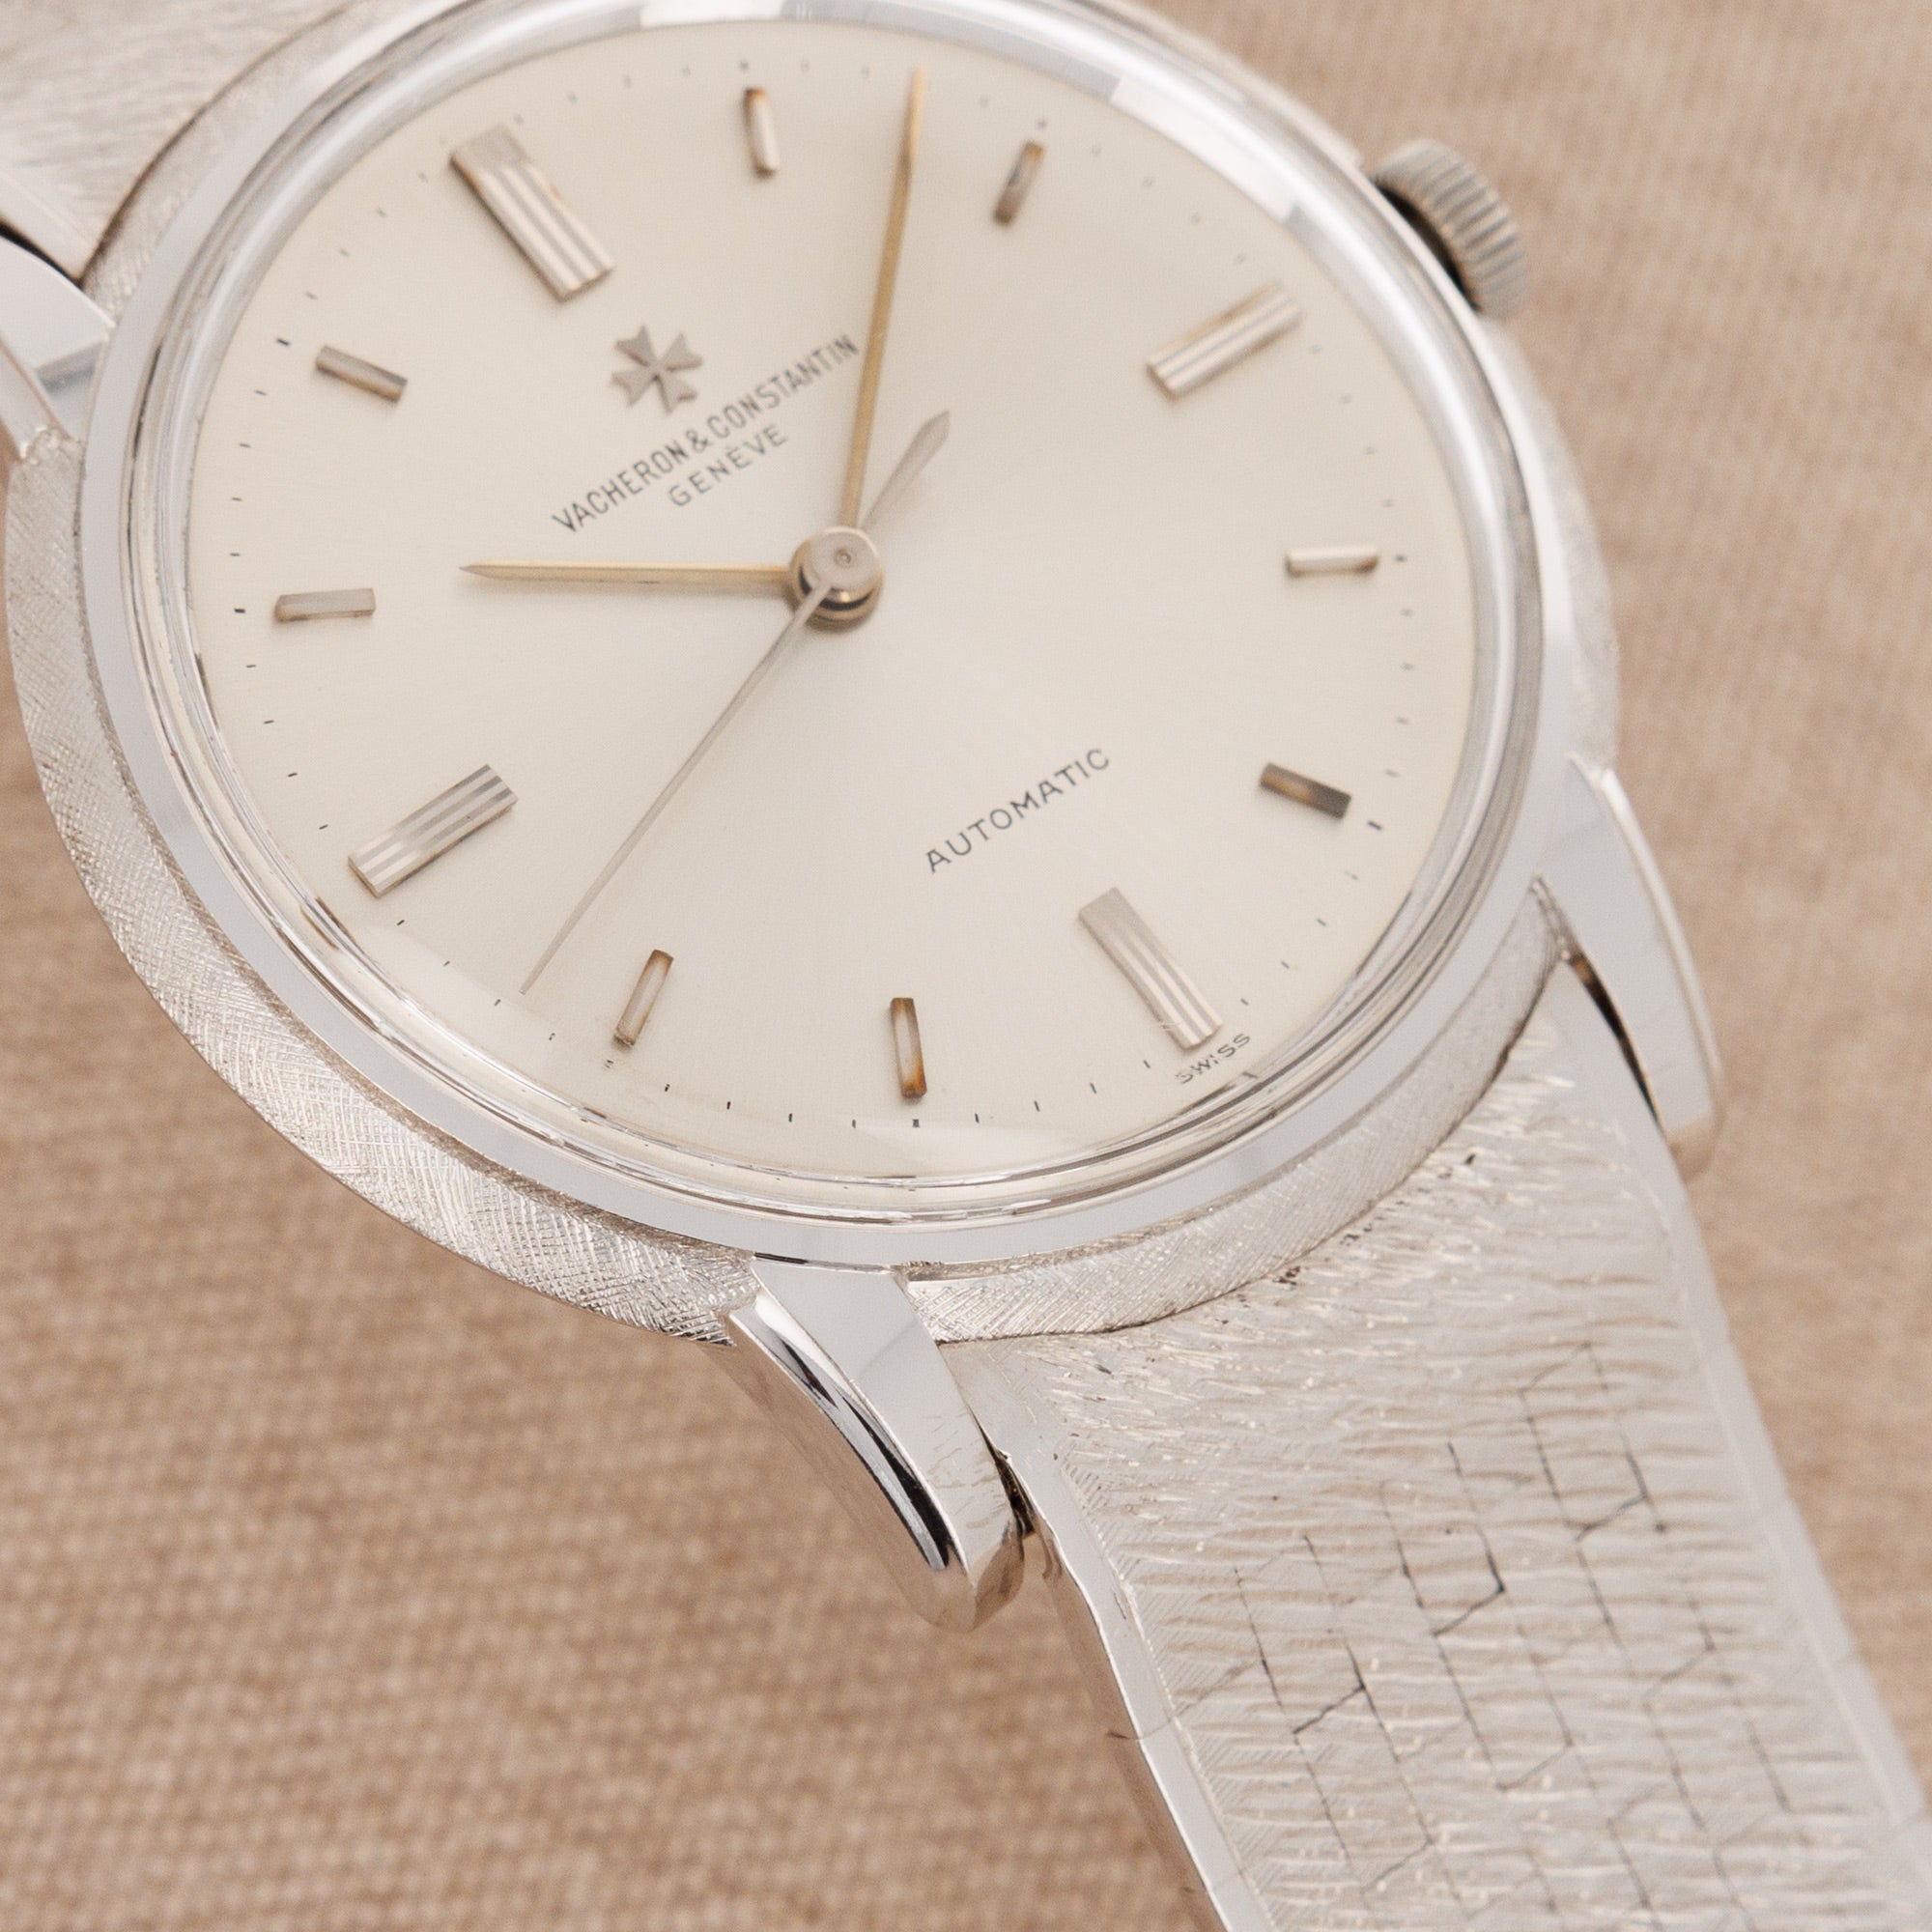 Vacheron Constantin - Vacheron Constantin White Gold Vintage Watch Ref. 6394 - The Keystone Watches